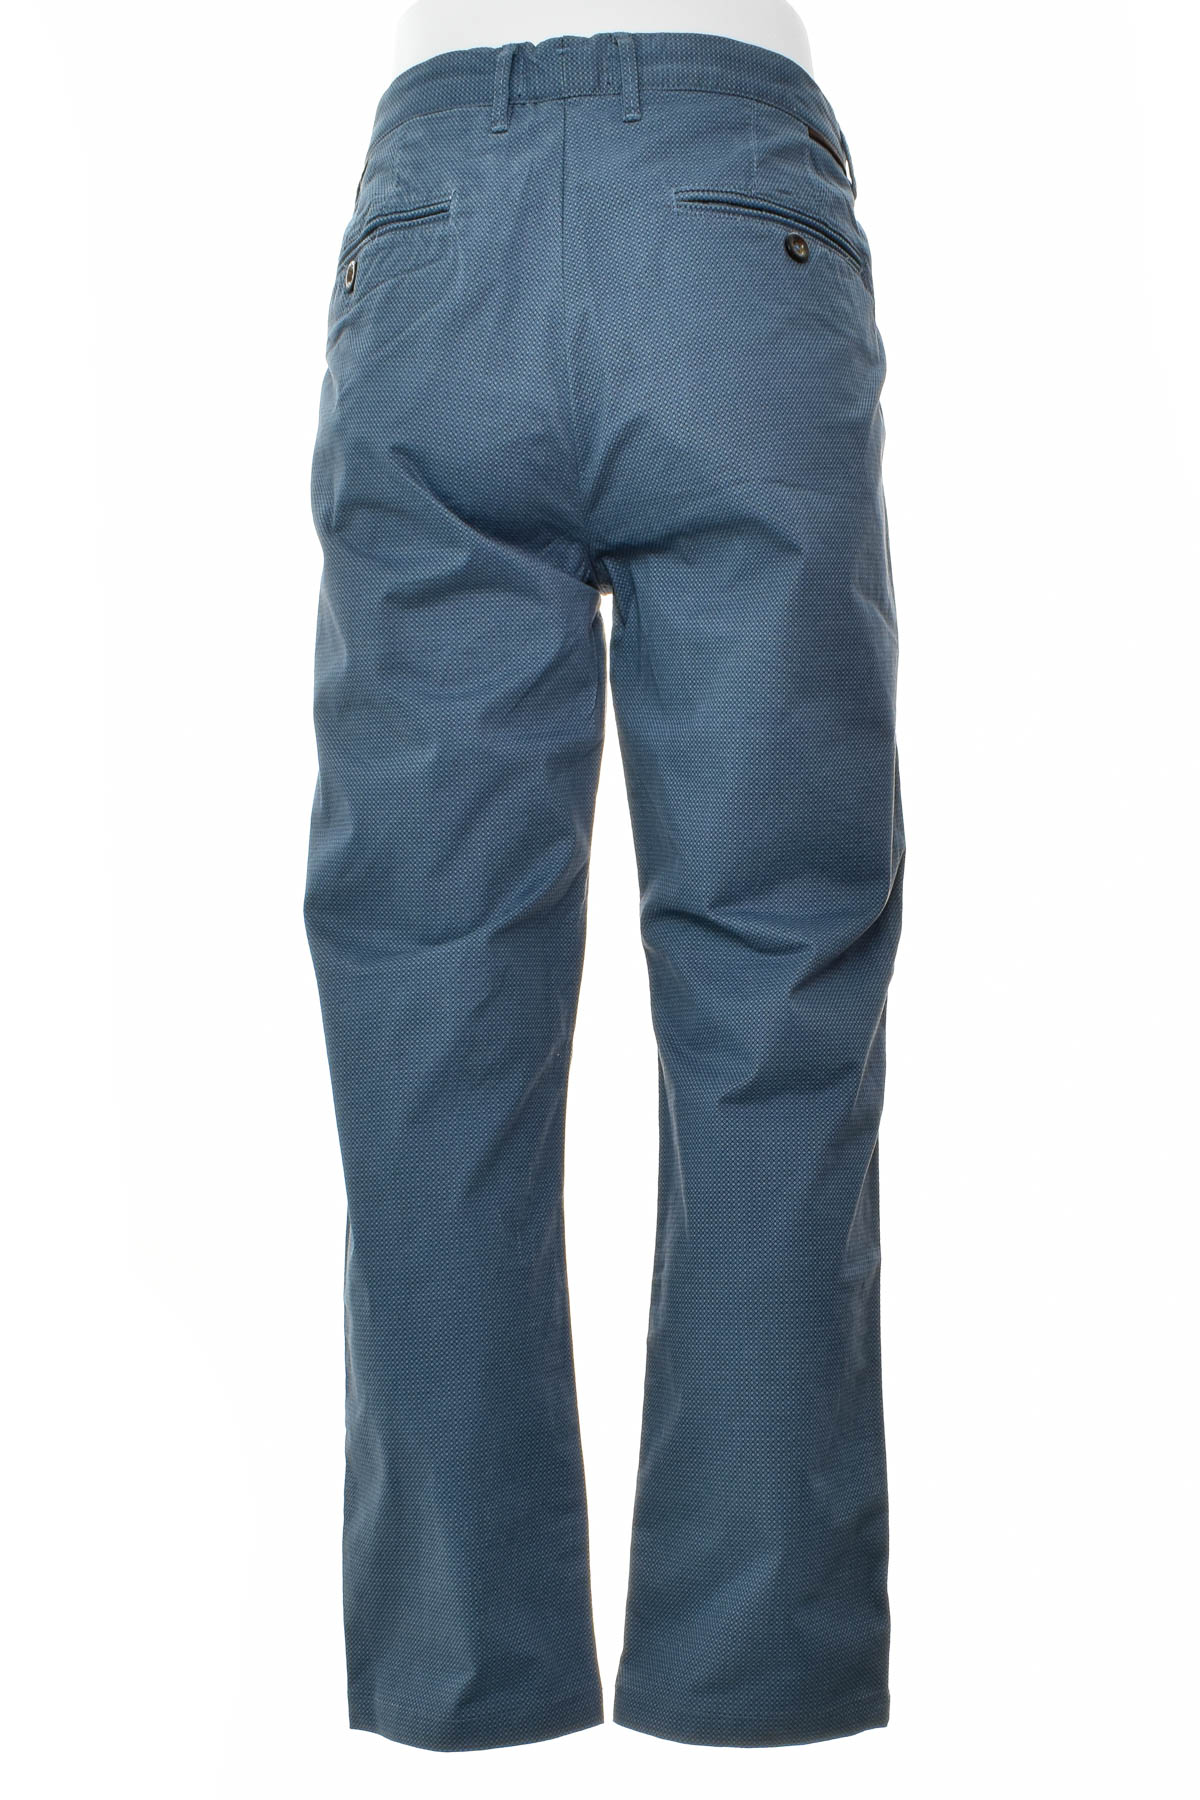 Pantalon pentru bărbați - RESERVED - 1